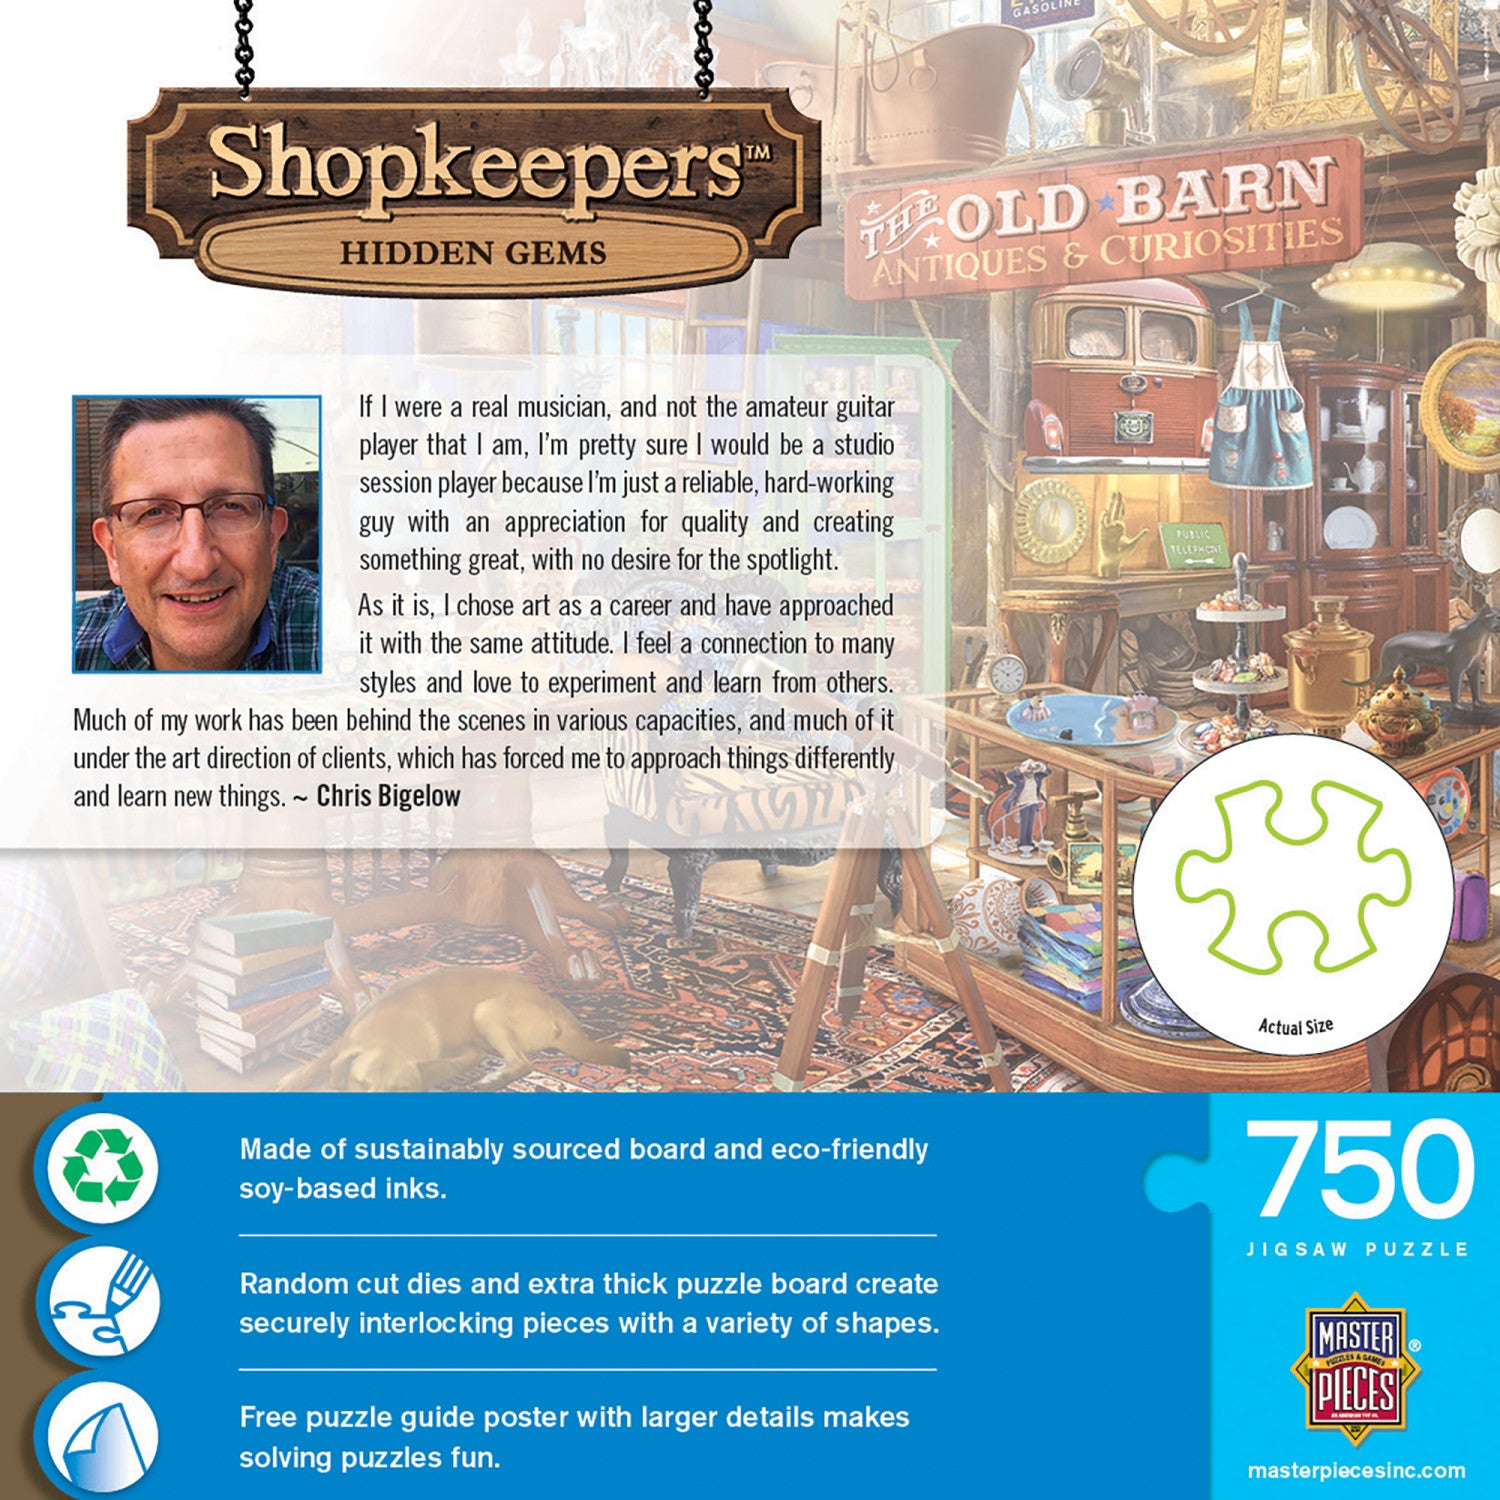 Shopkeepers - Hidden Gems 750 Piece Jigsaw Puzzle